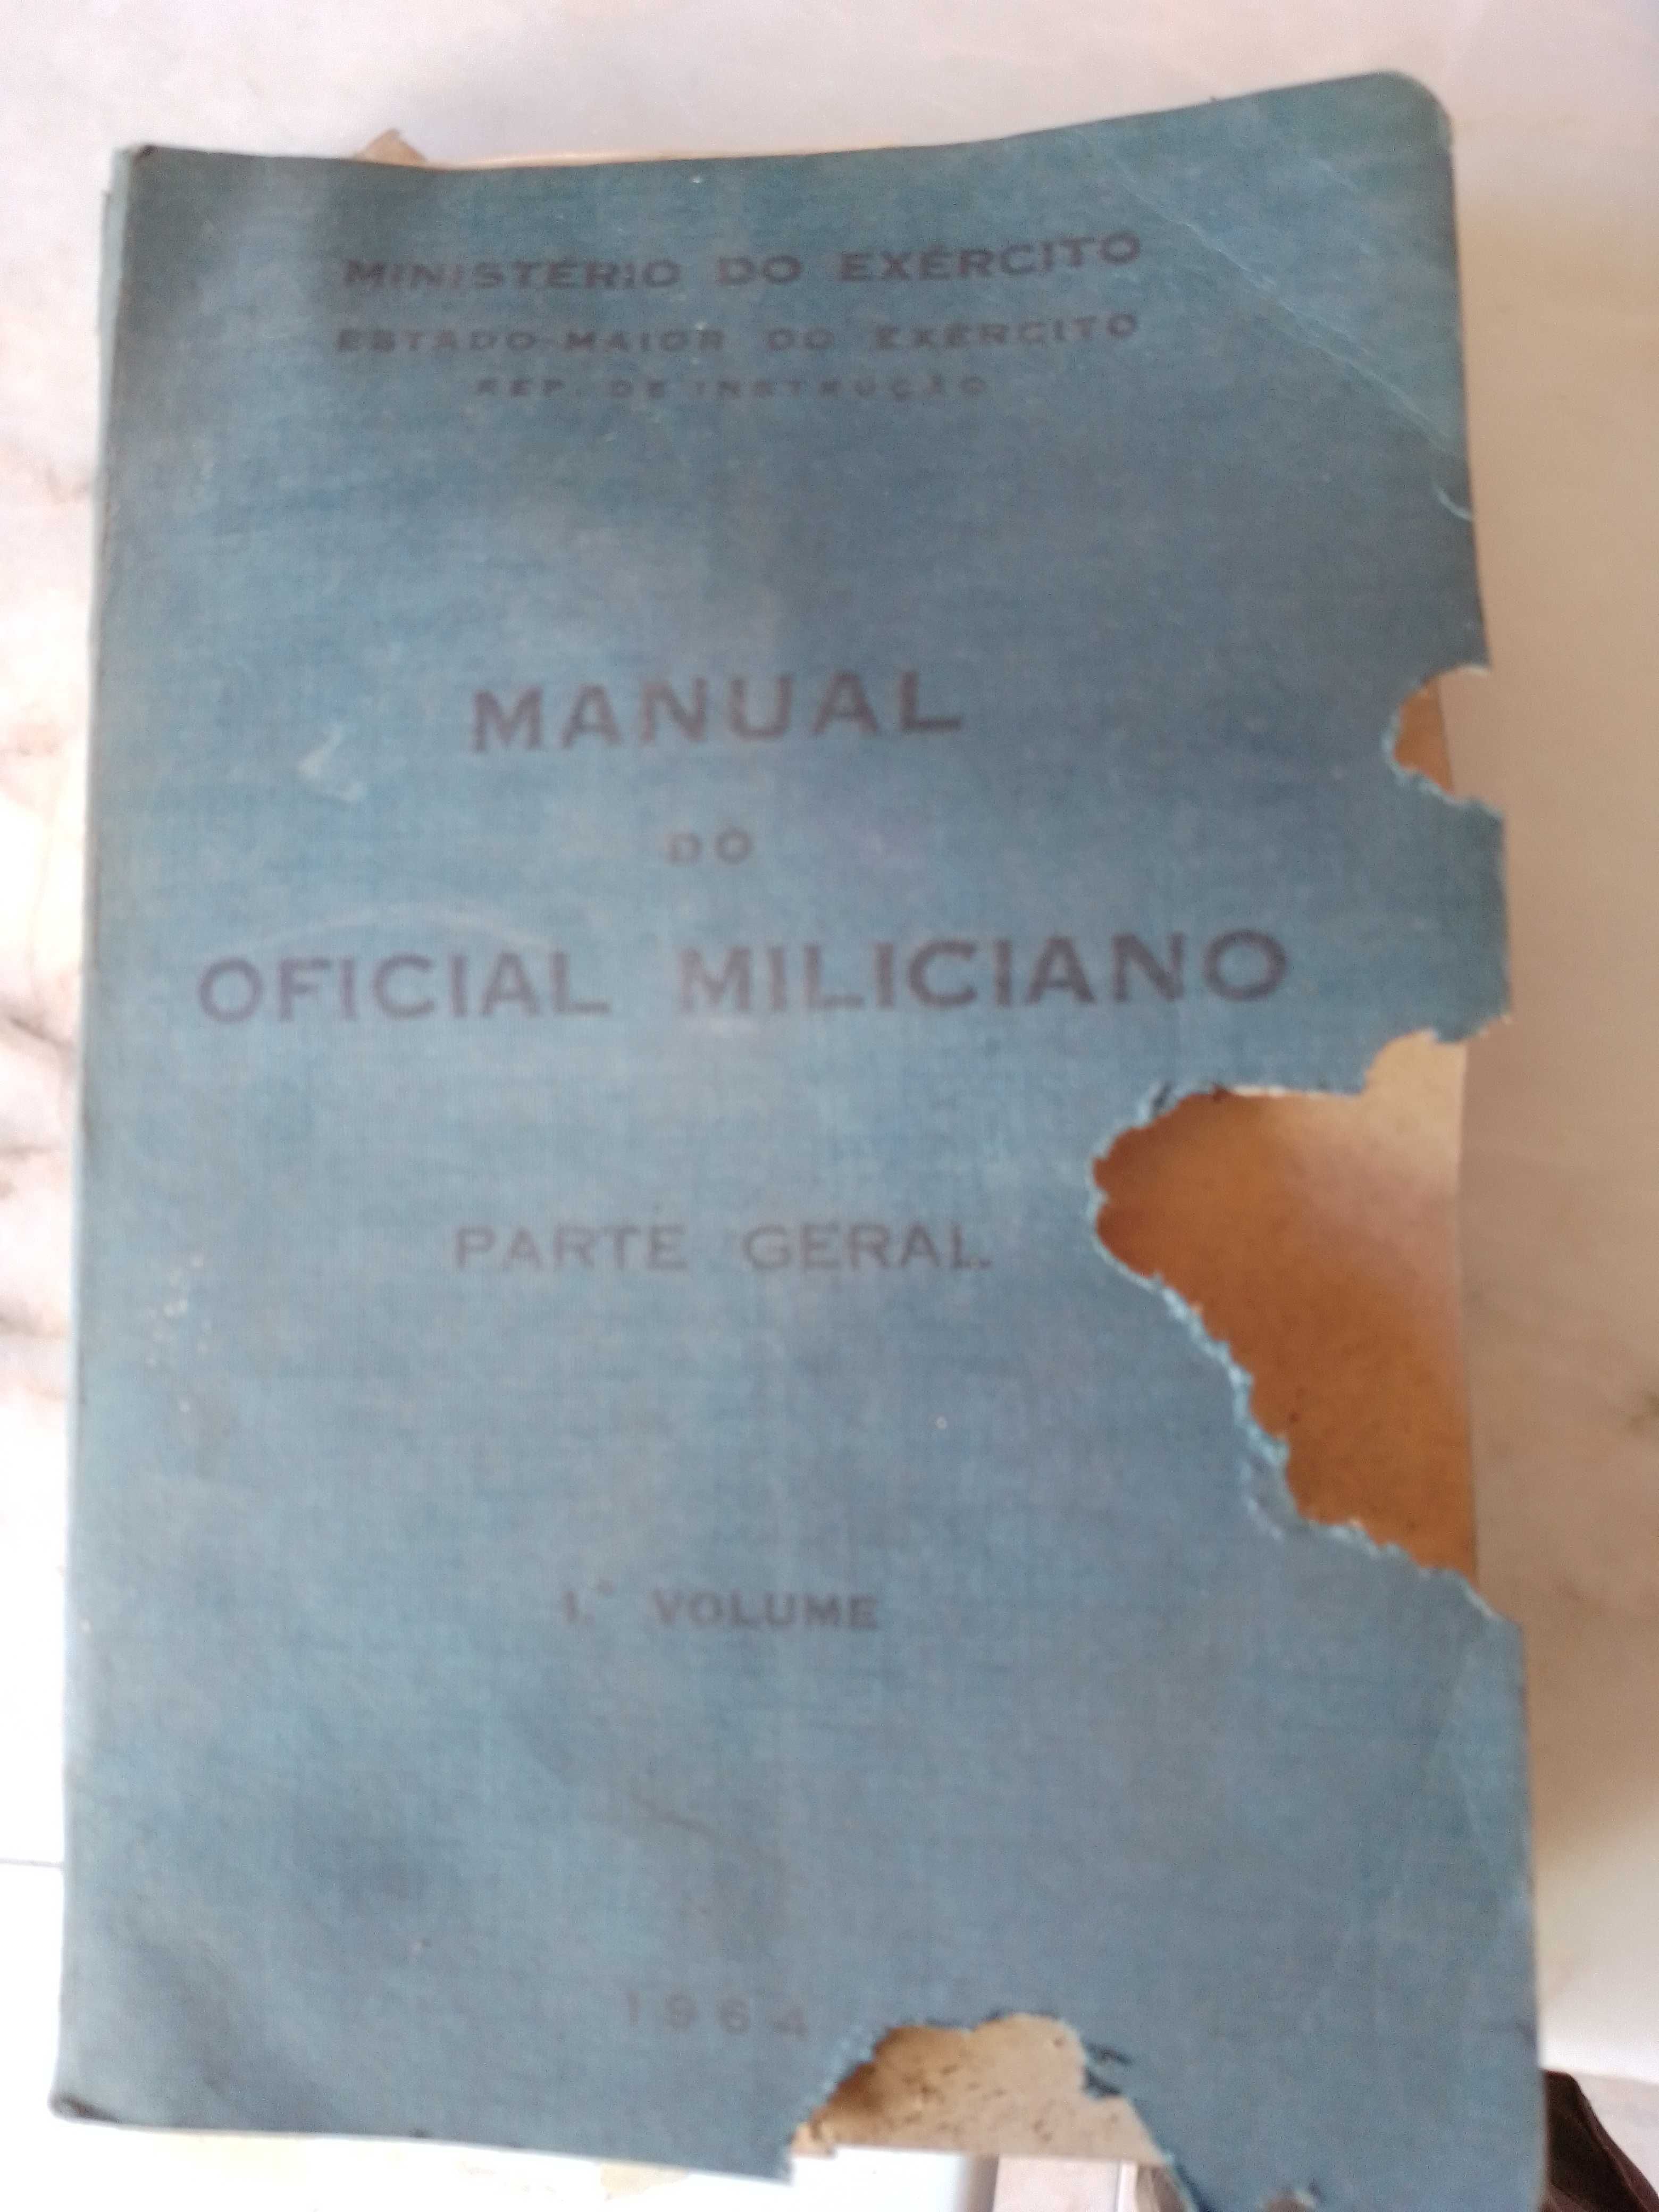 Manual do oficial miliciano primeiro volume. 1964.